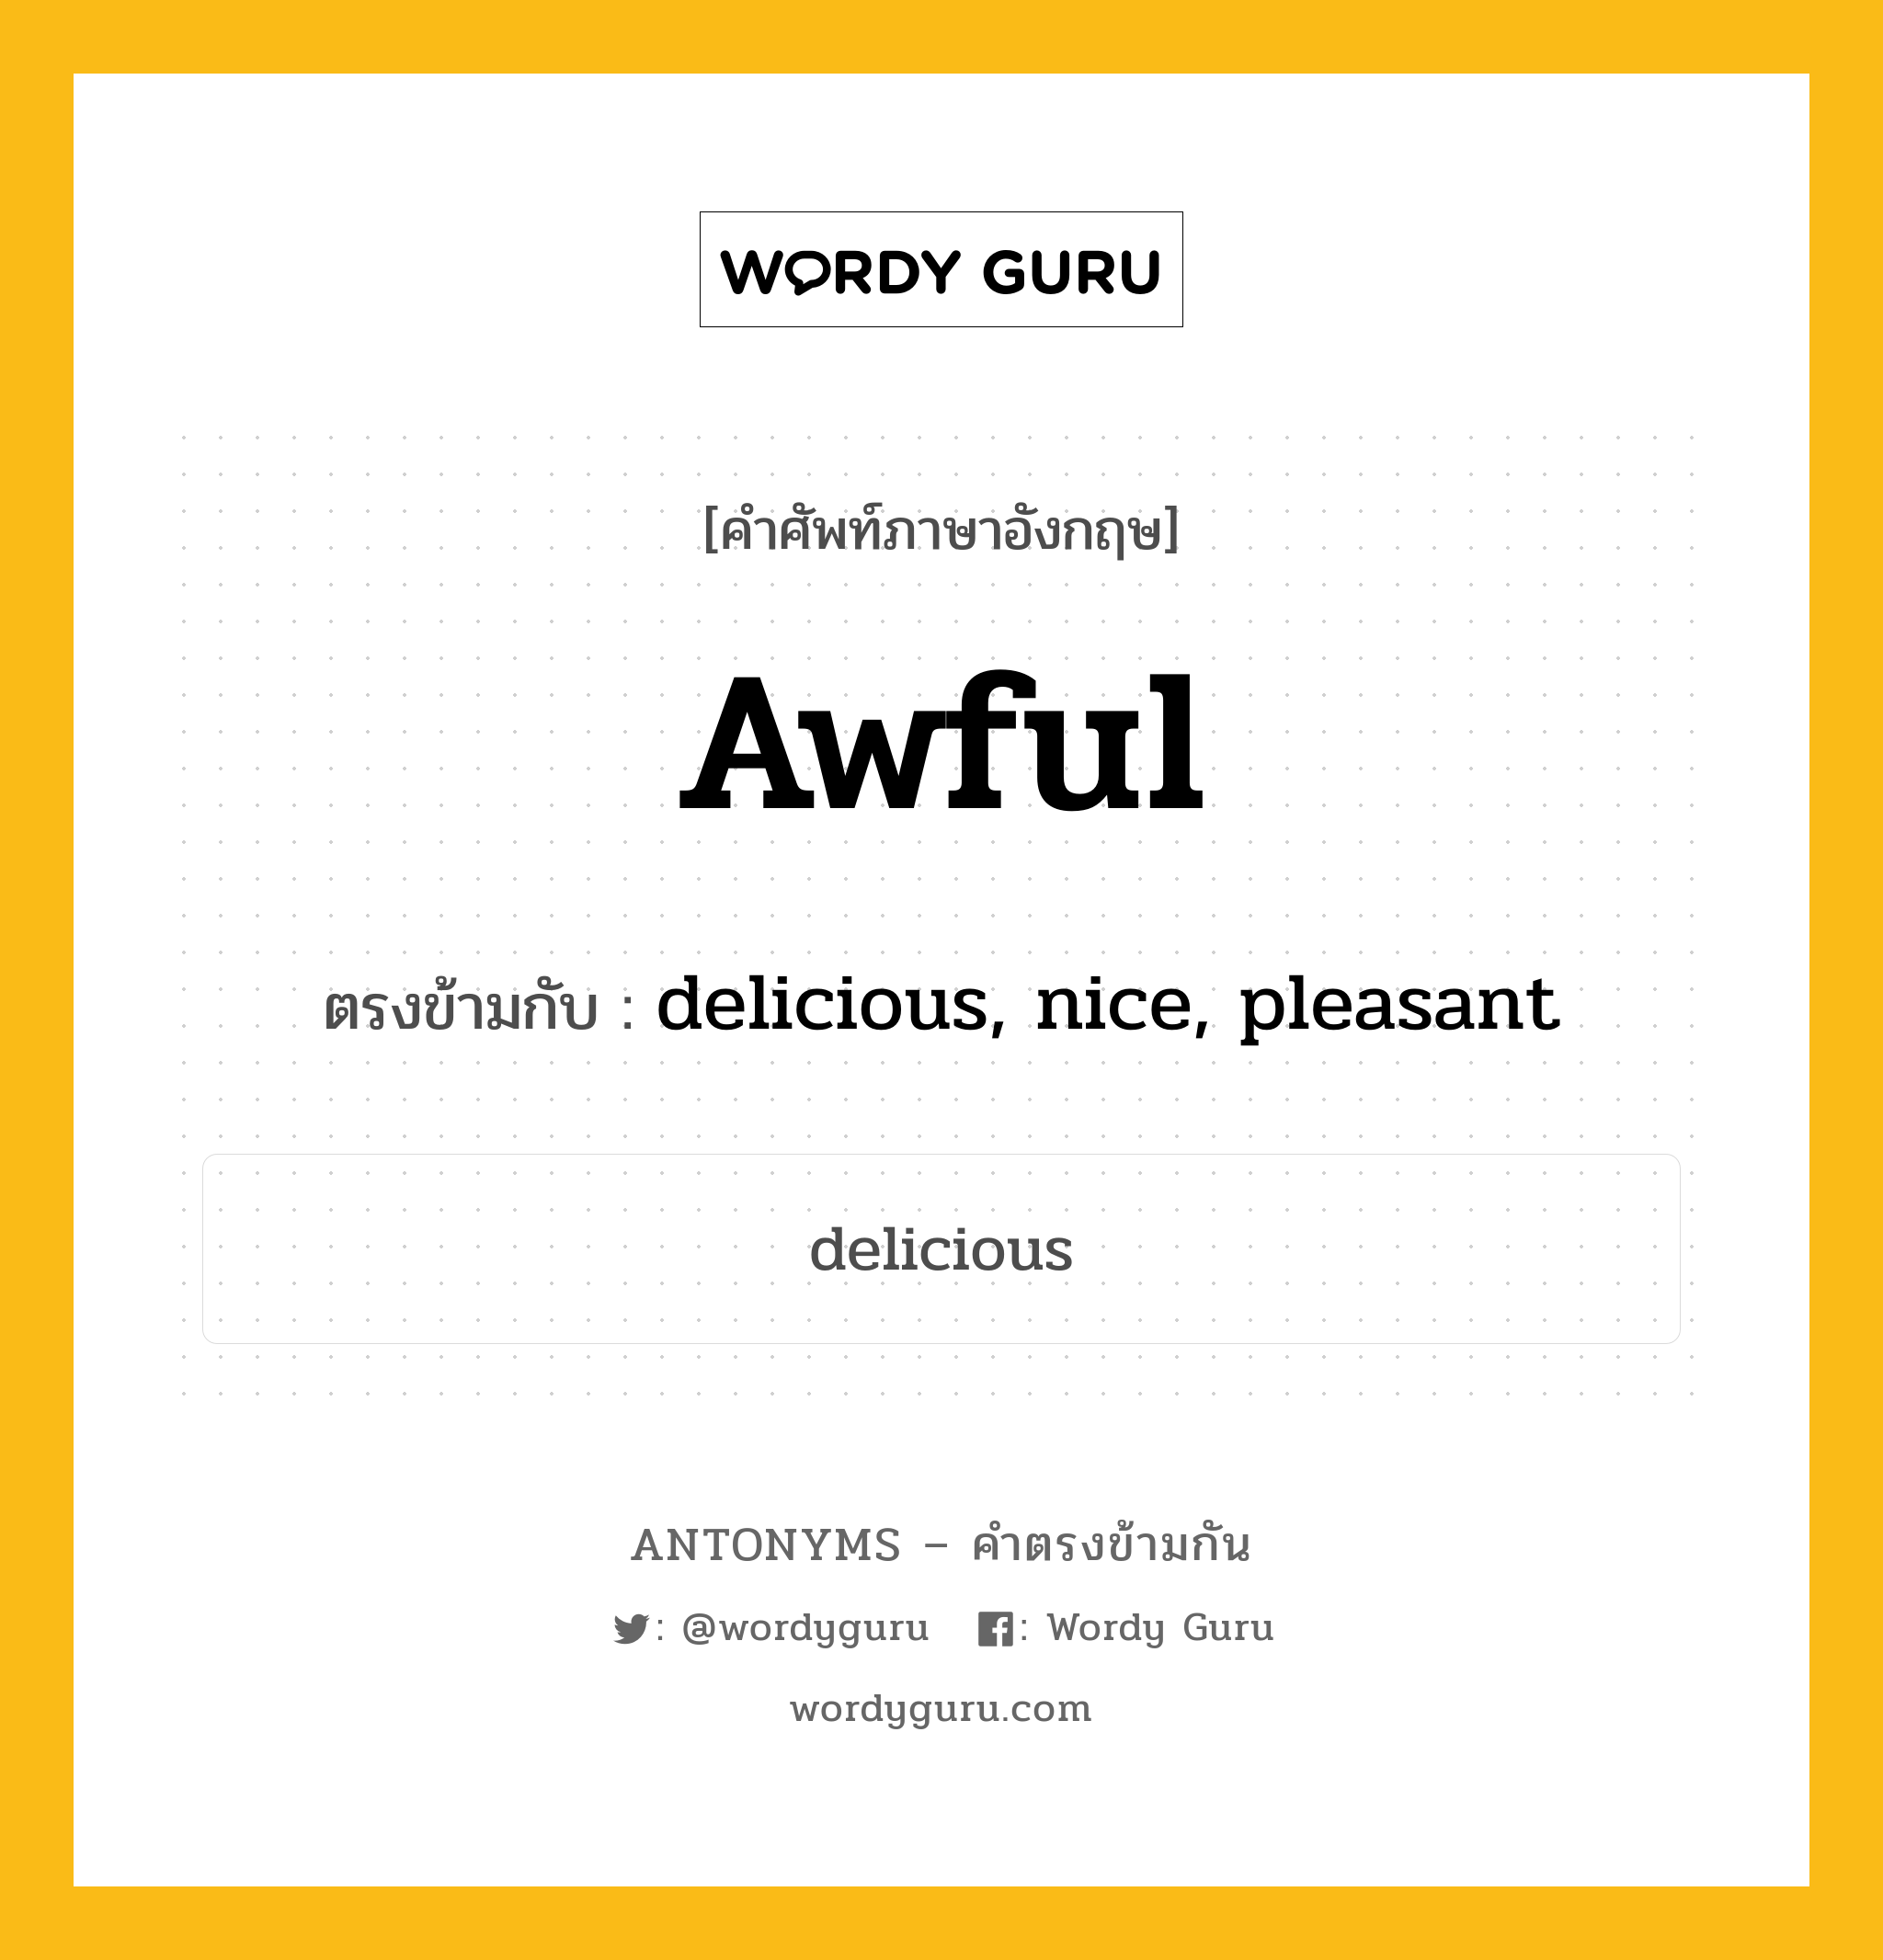 awful เป็นคำตรงข้ามกับคำไหนบ้าง?, คำศัพท์ภาษาอังกฤษ awful ตรงข้ามกับ delicious, nice, pleasant หมวด delicious, nice, pleasant